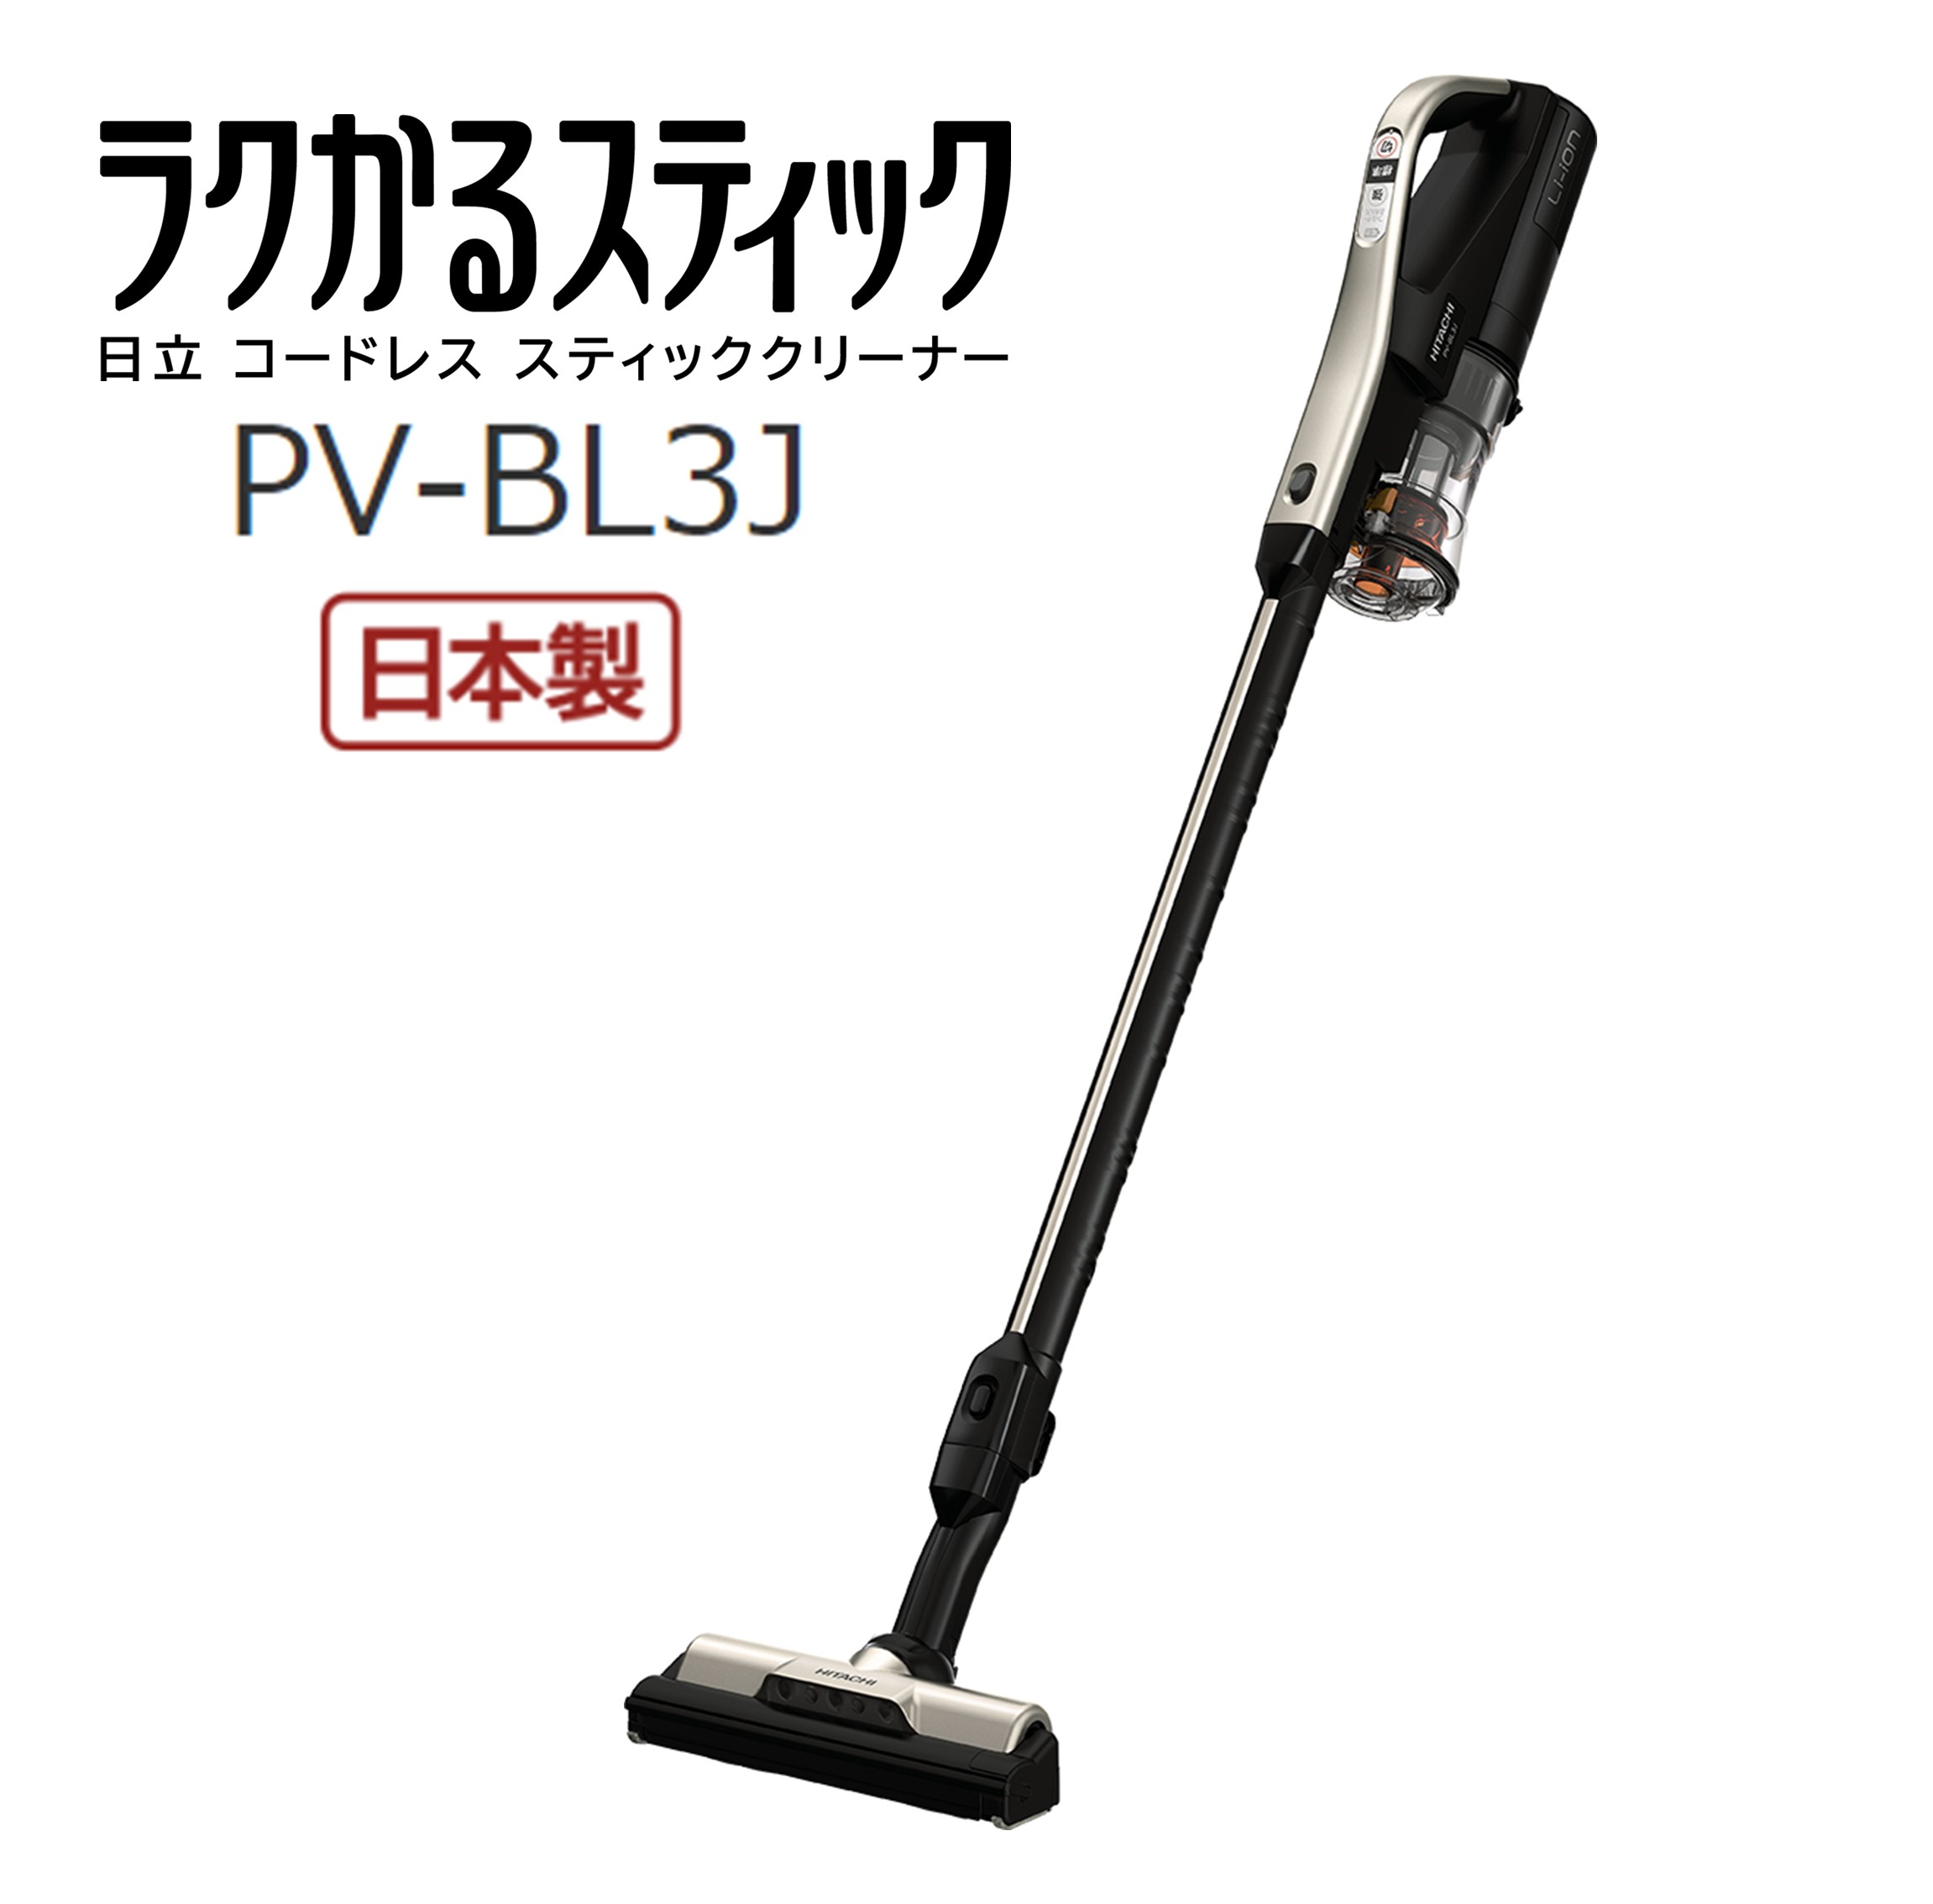 日立 掃除機 PV-BL 3J シャンパンゴールド-